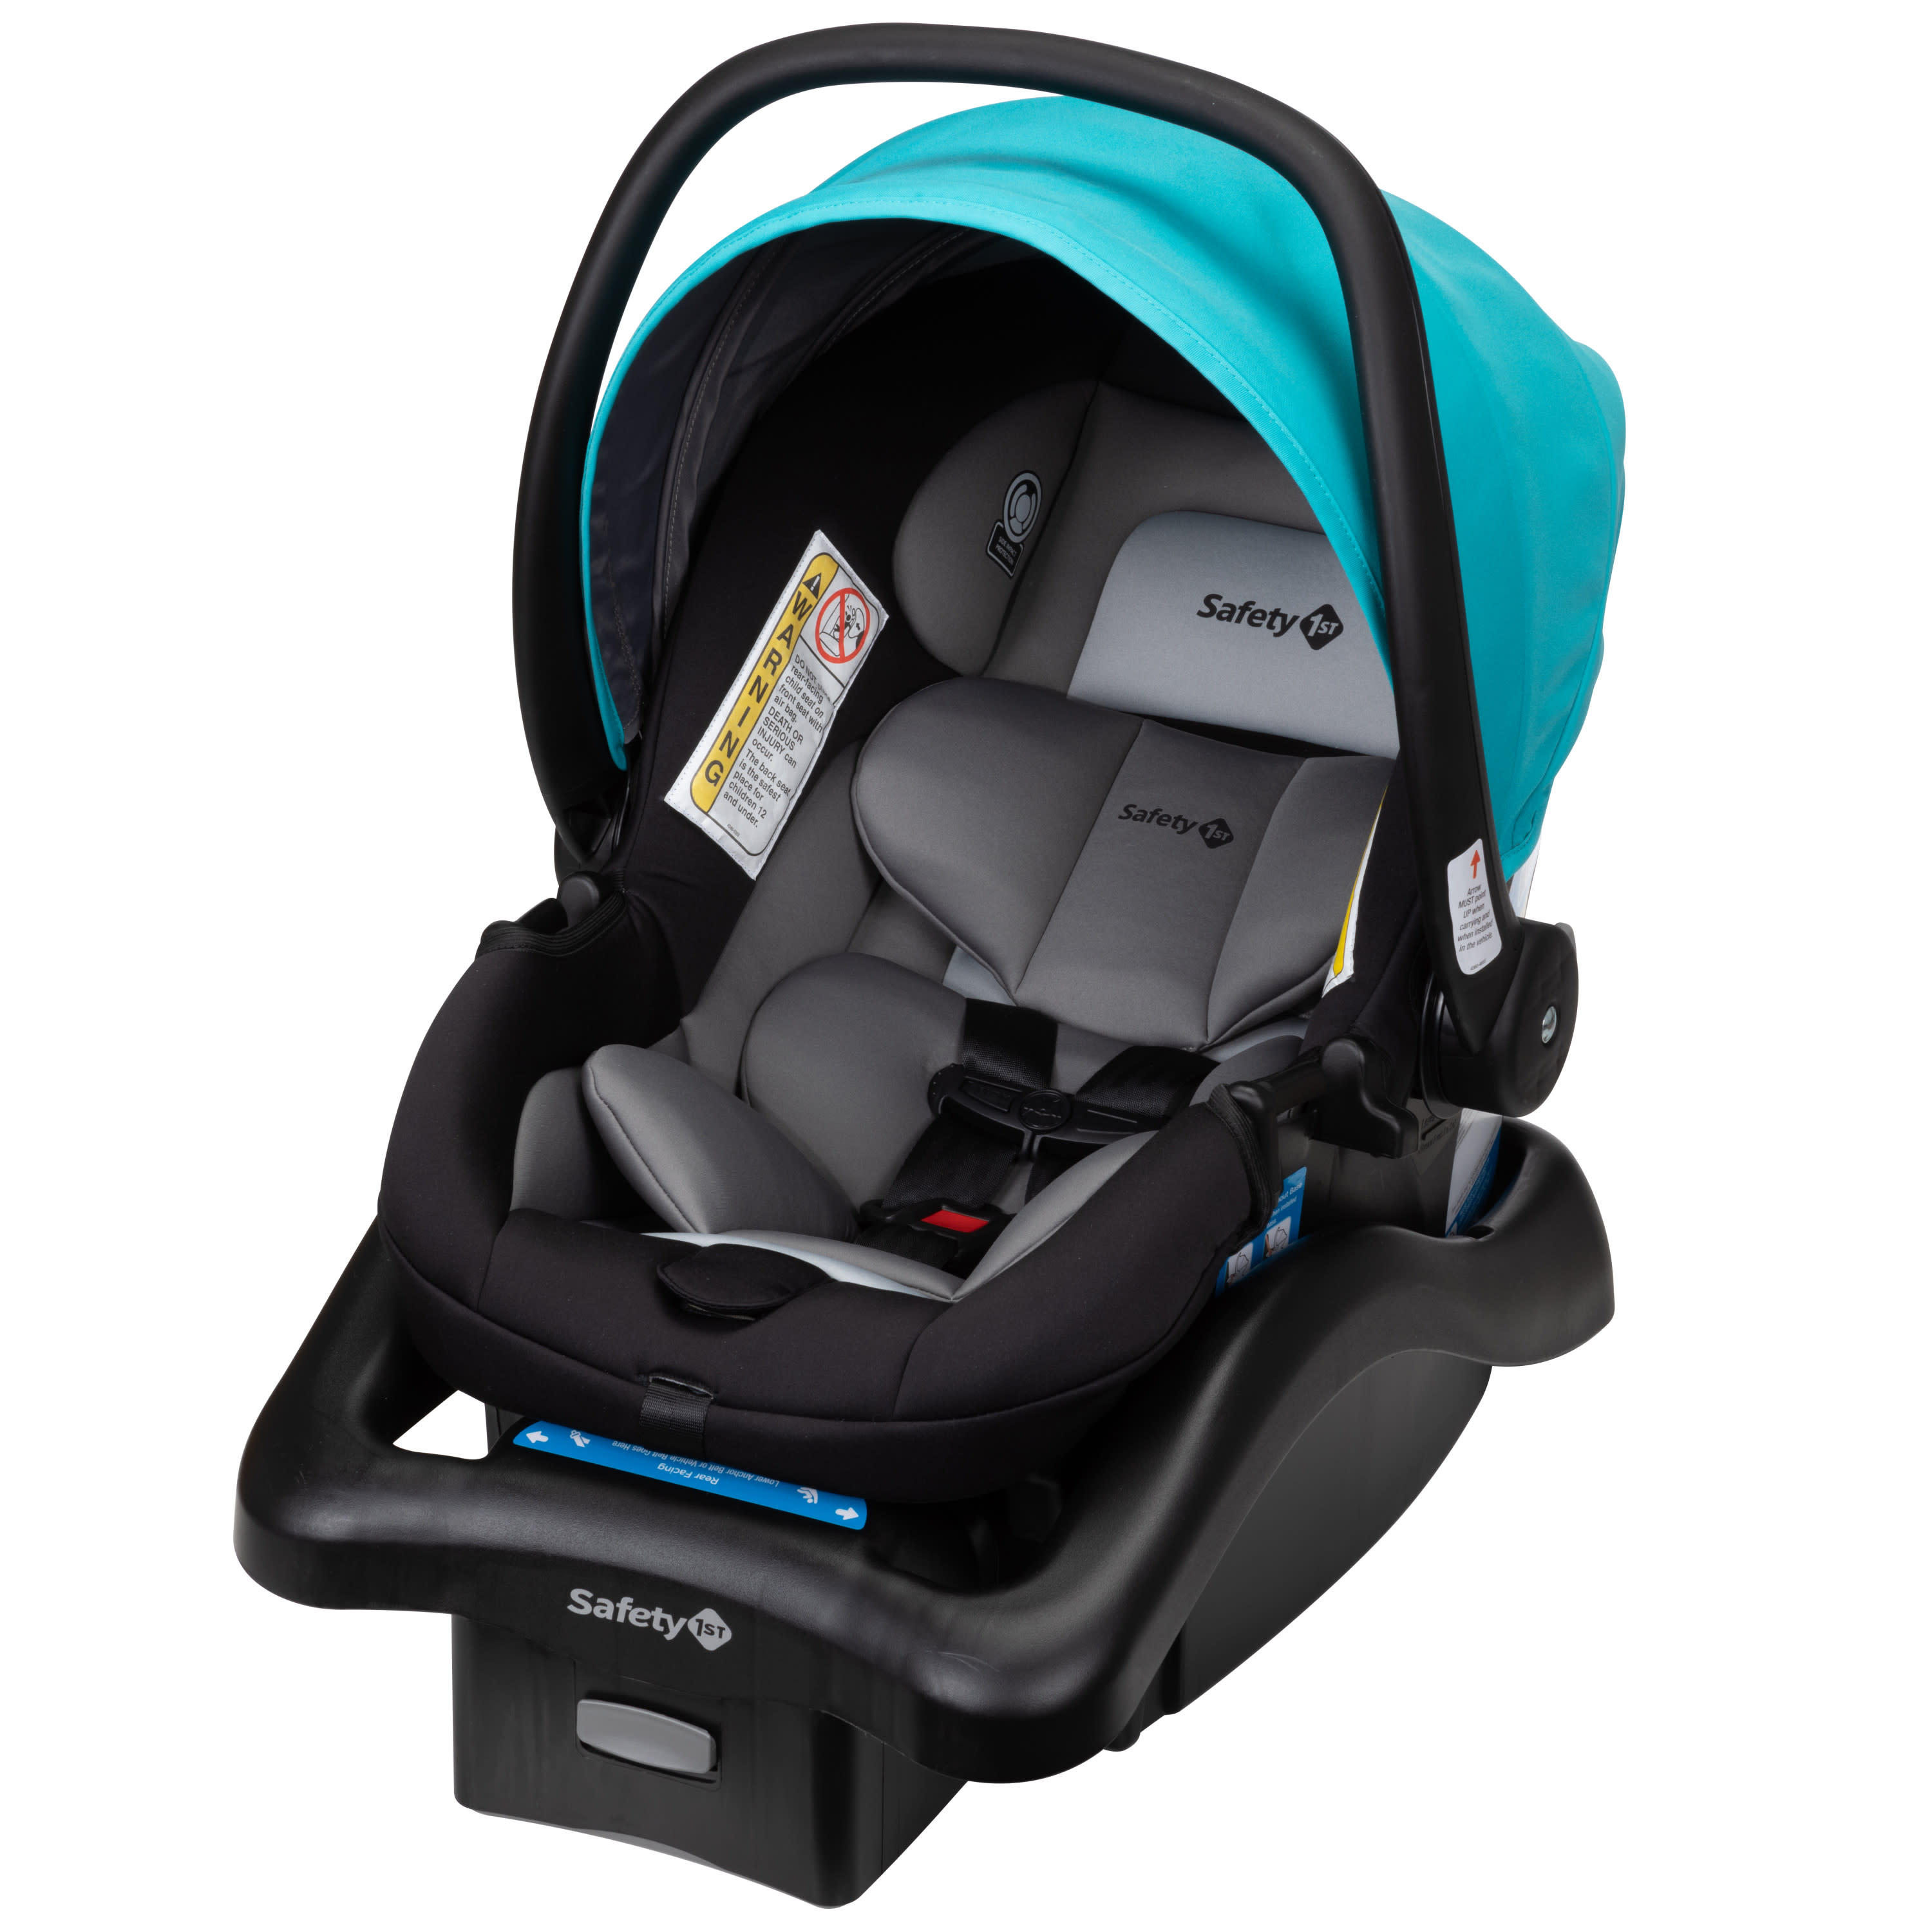 Safety 1ˢᵗ onBoard 35 LT Infant Car Seat, Lake Blue - image 4 of 18